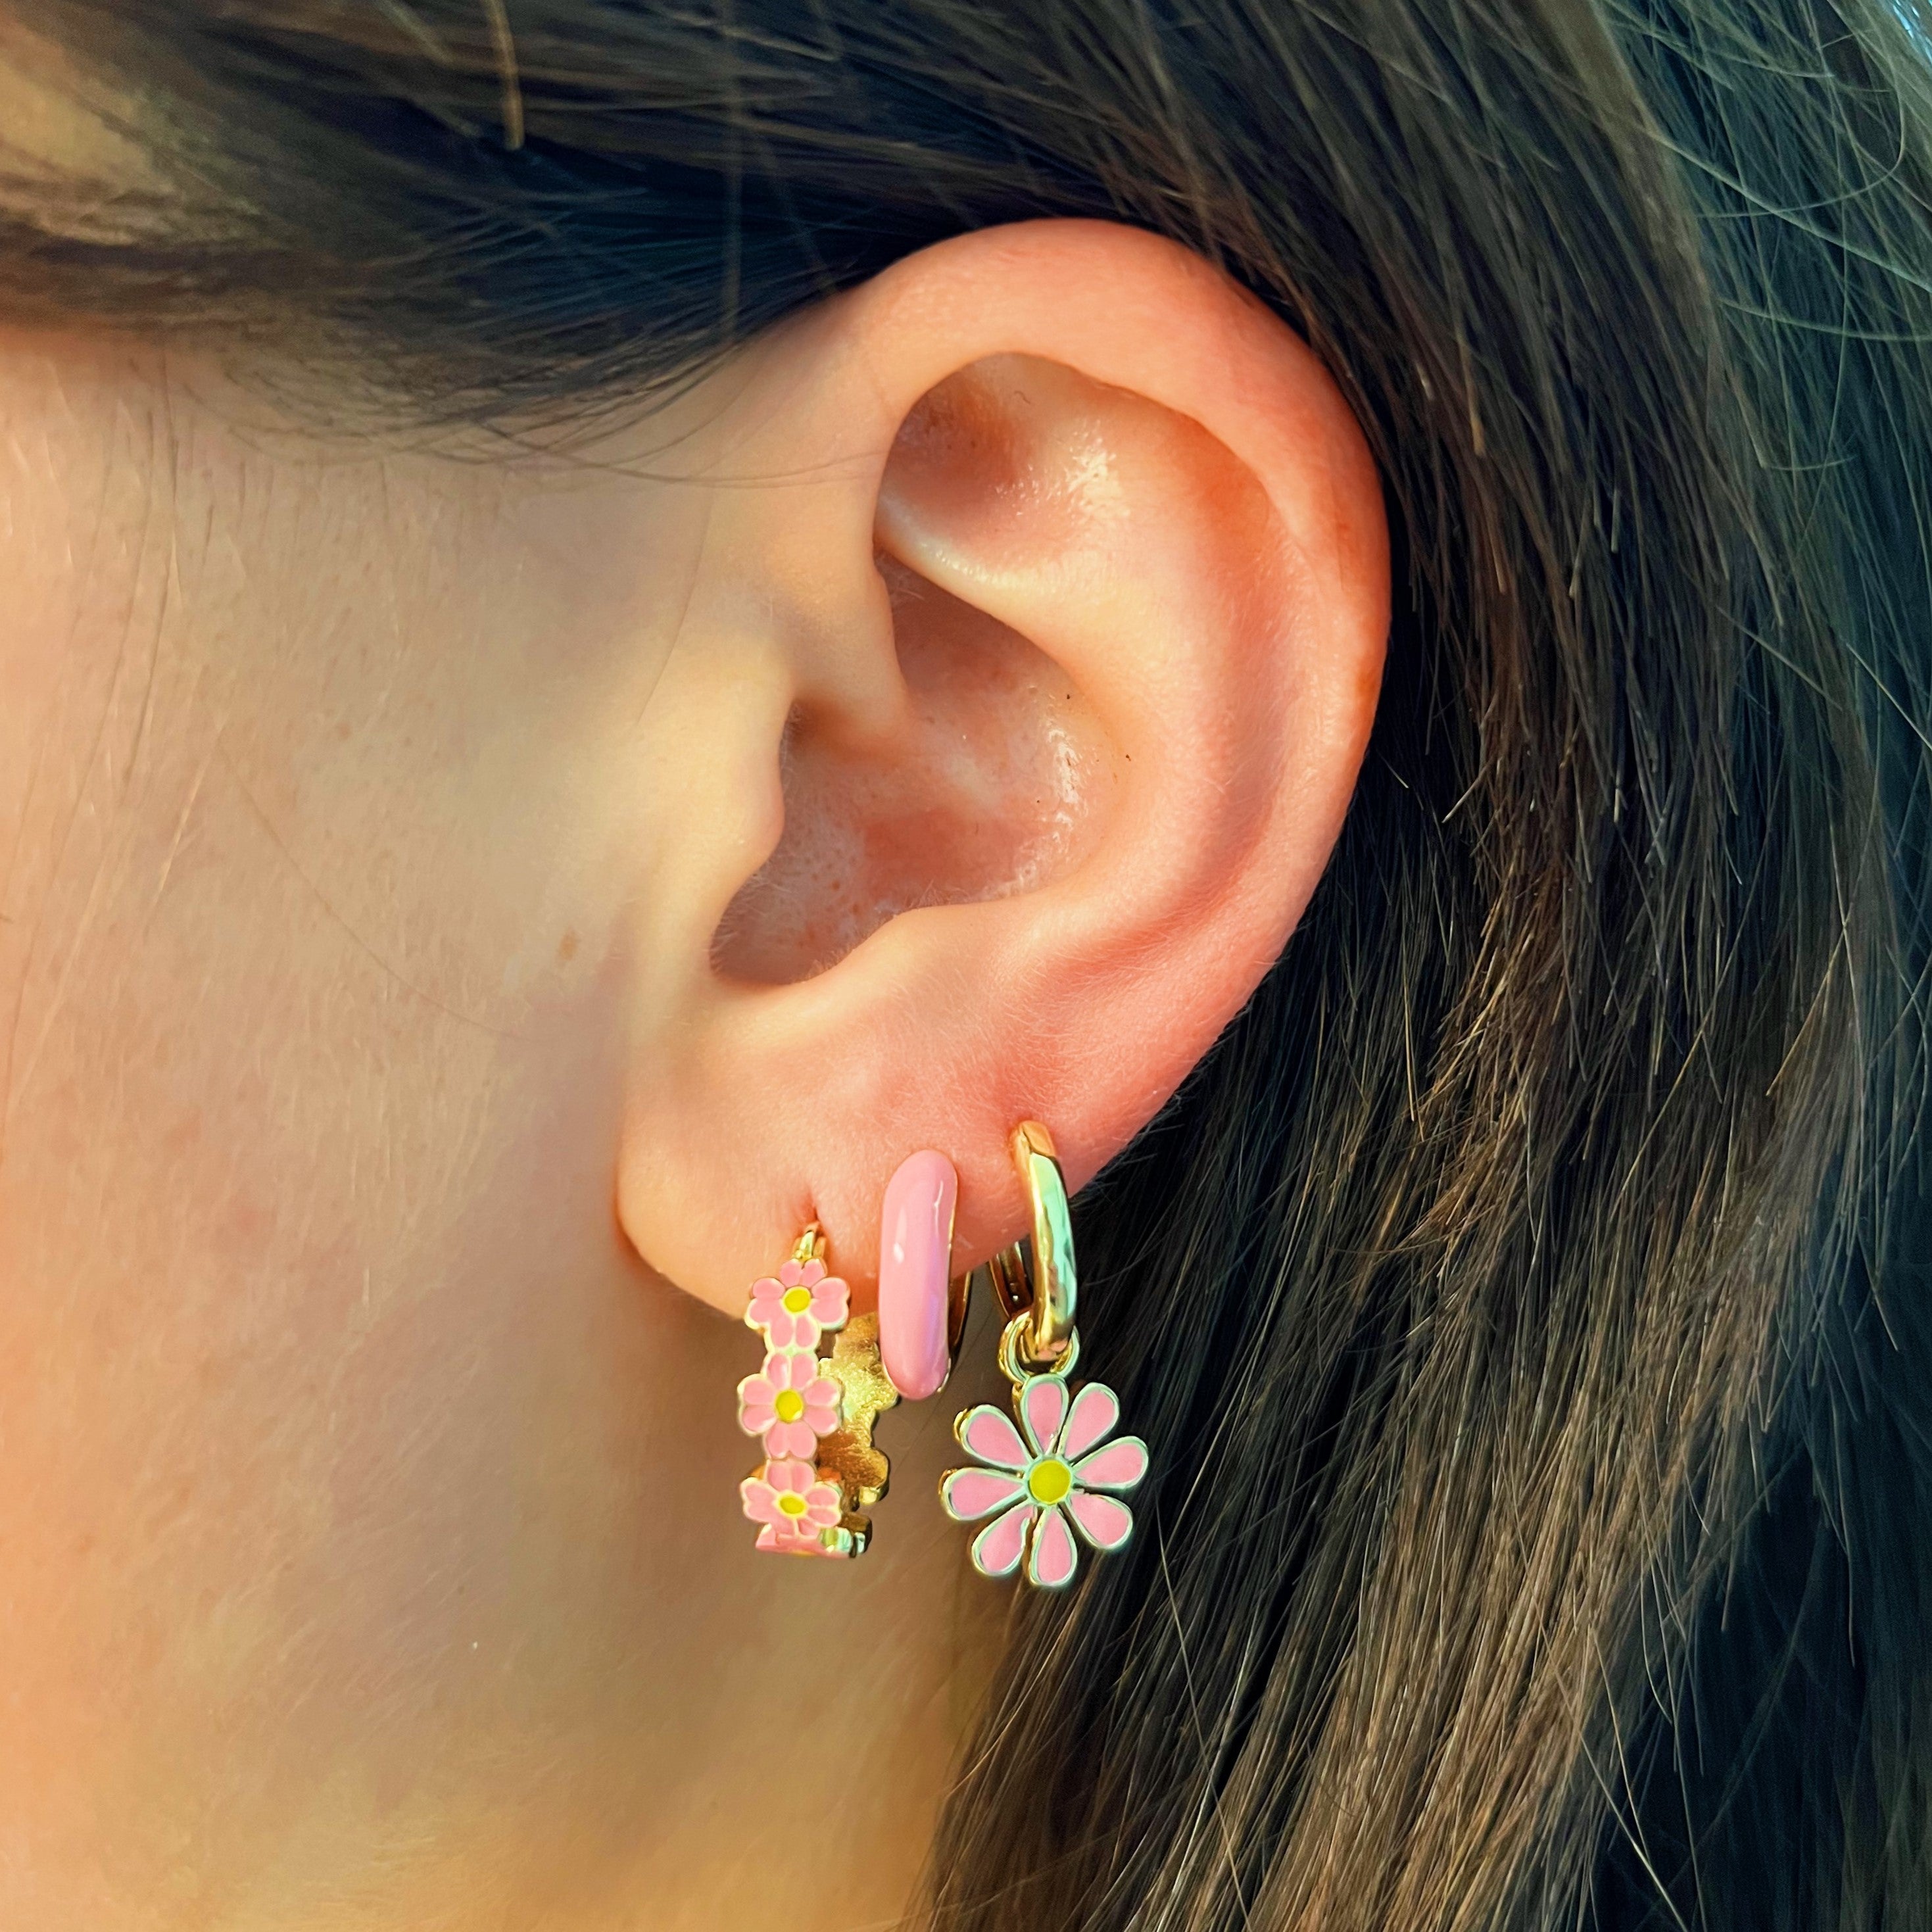 Rosabella pink earrings